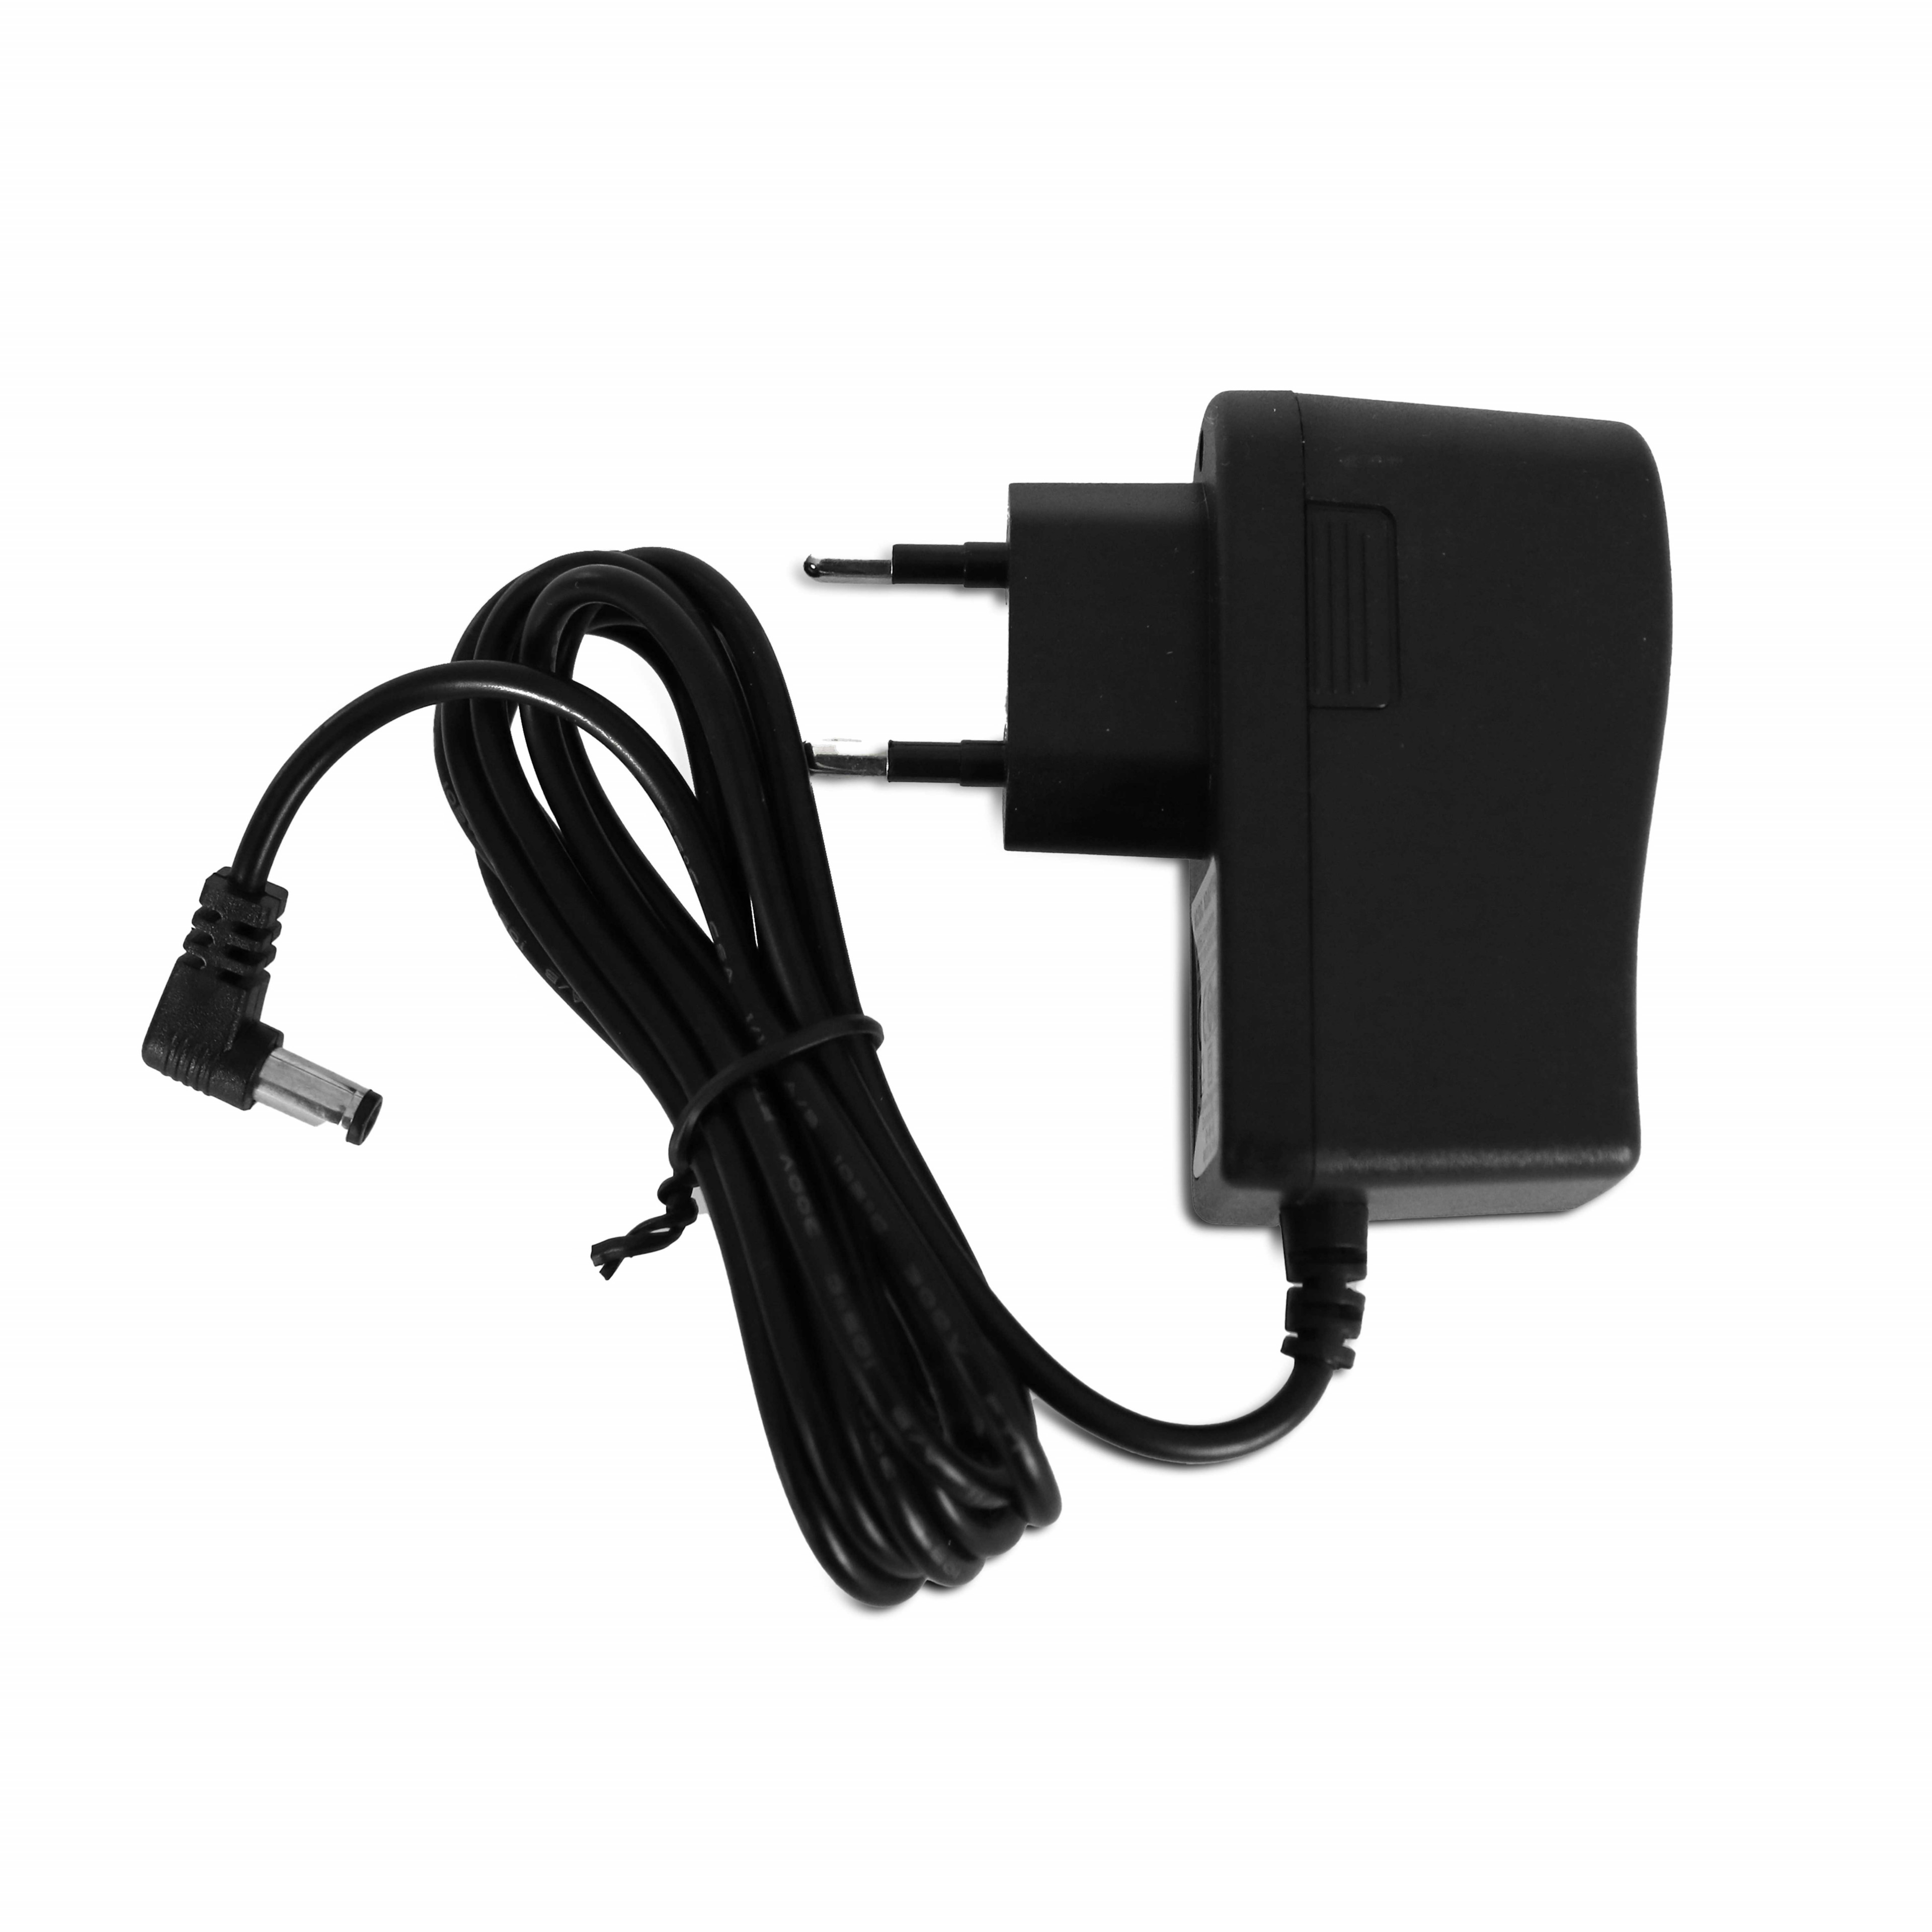 Chargeur USB pour smartphone électrique en fauteuil roulant et lumière LED